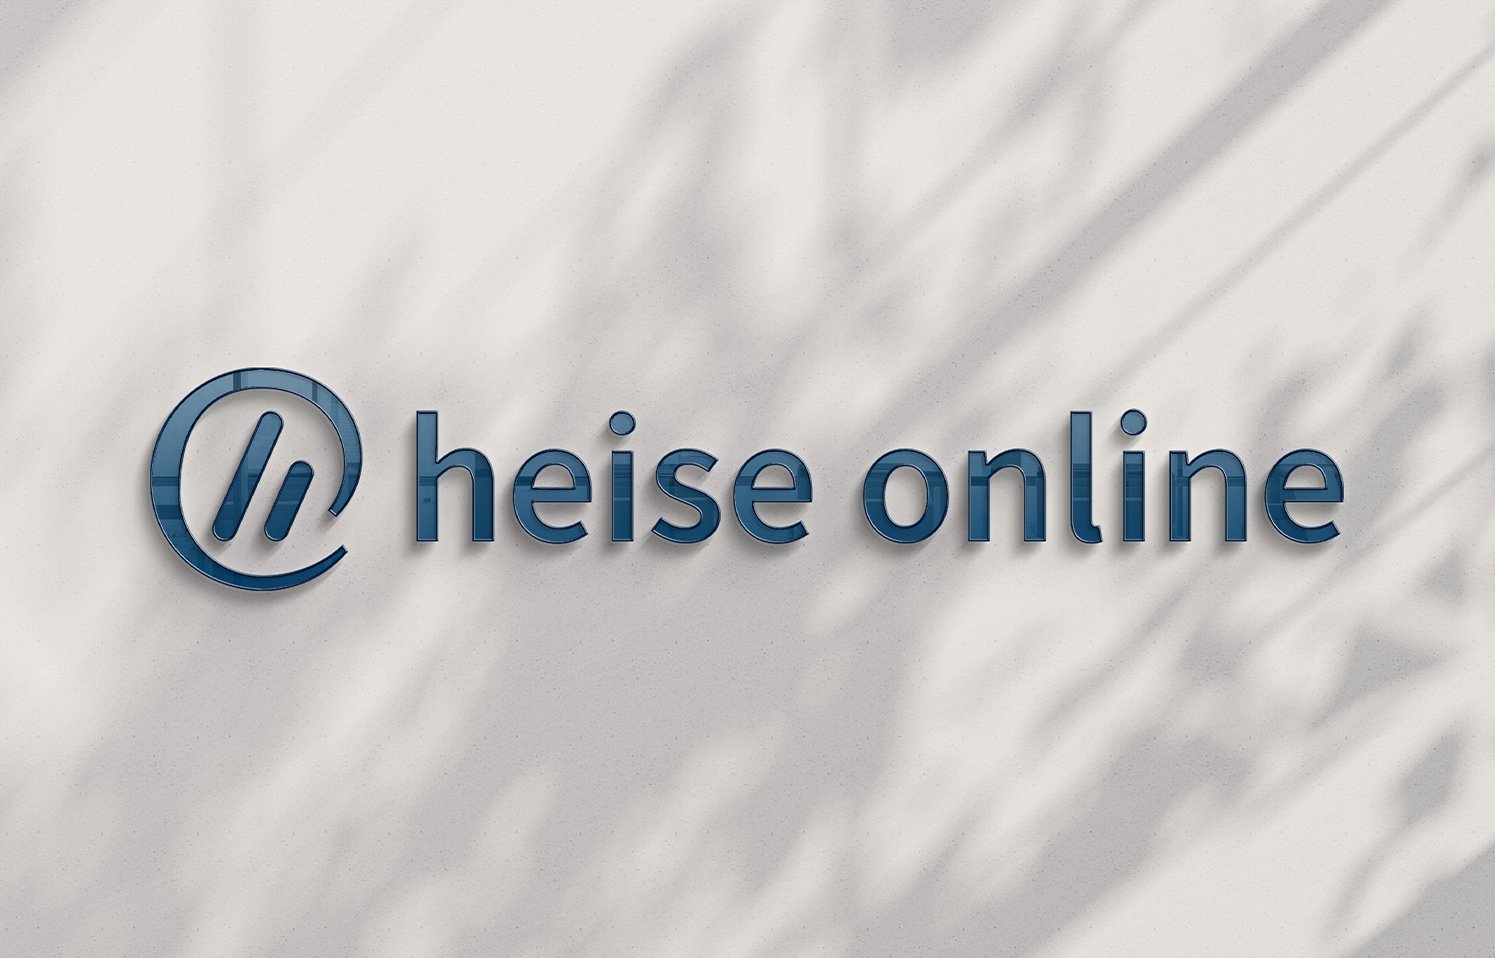 evernine-referenz-heise-online-1